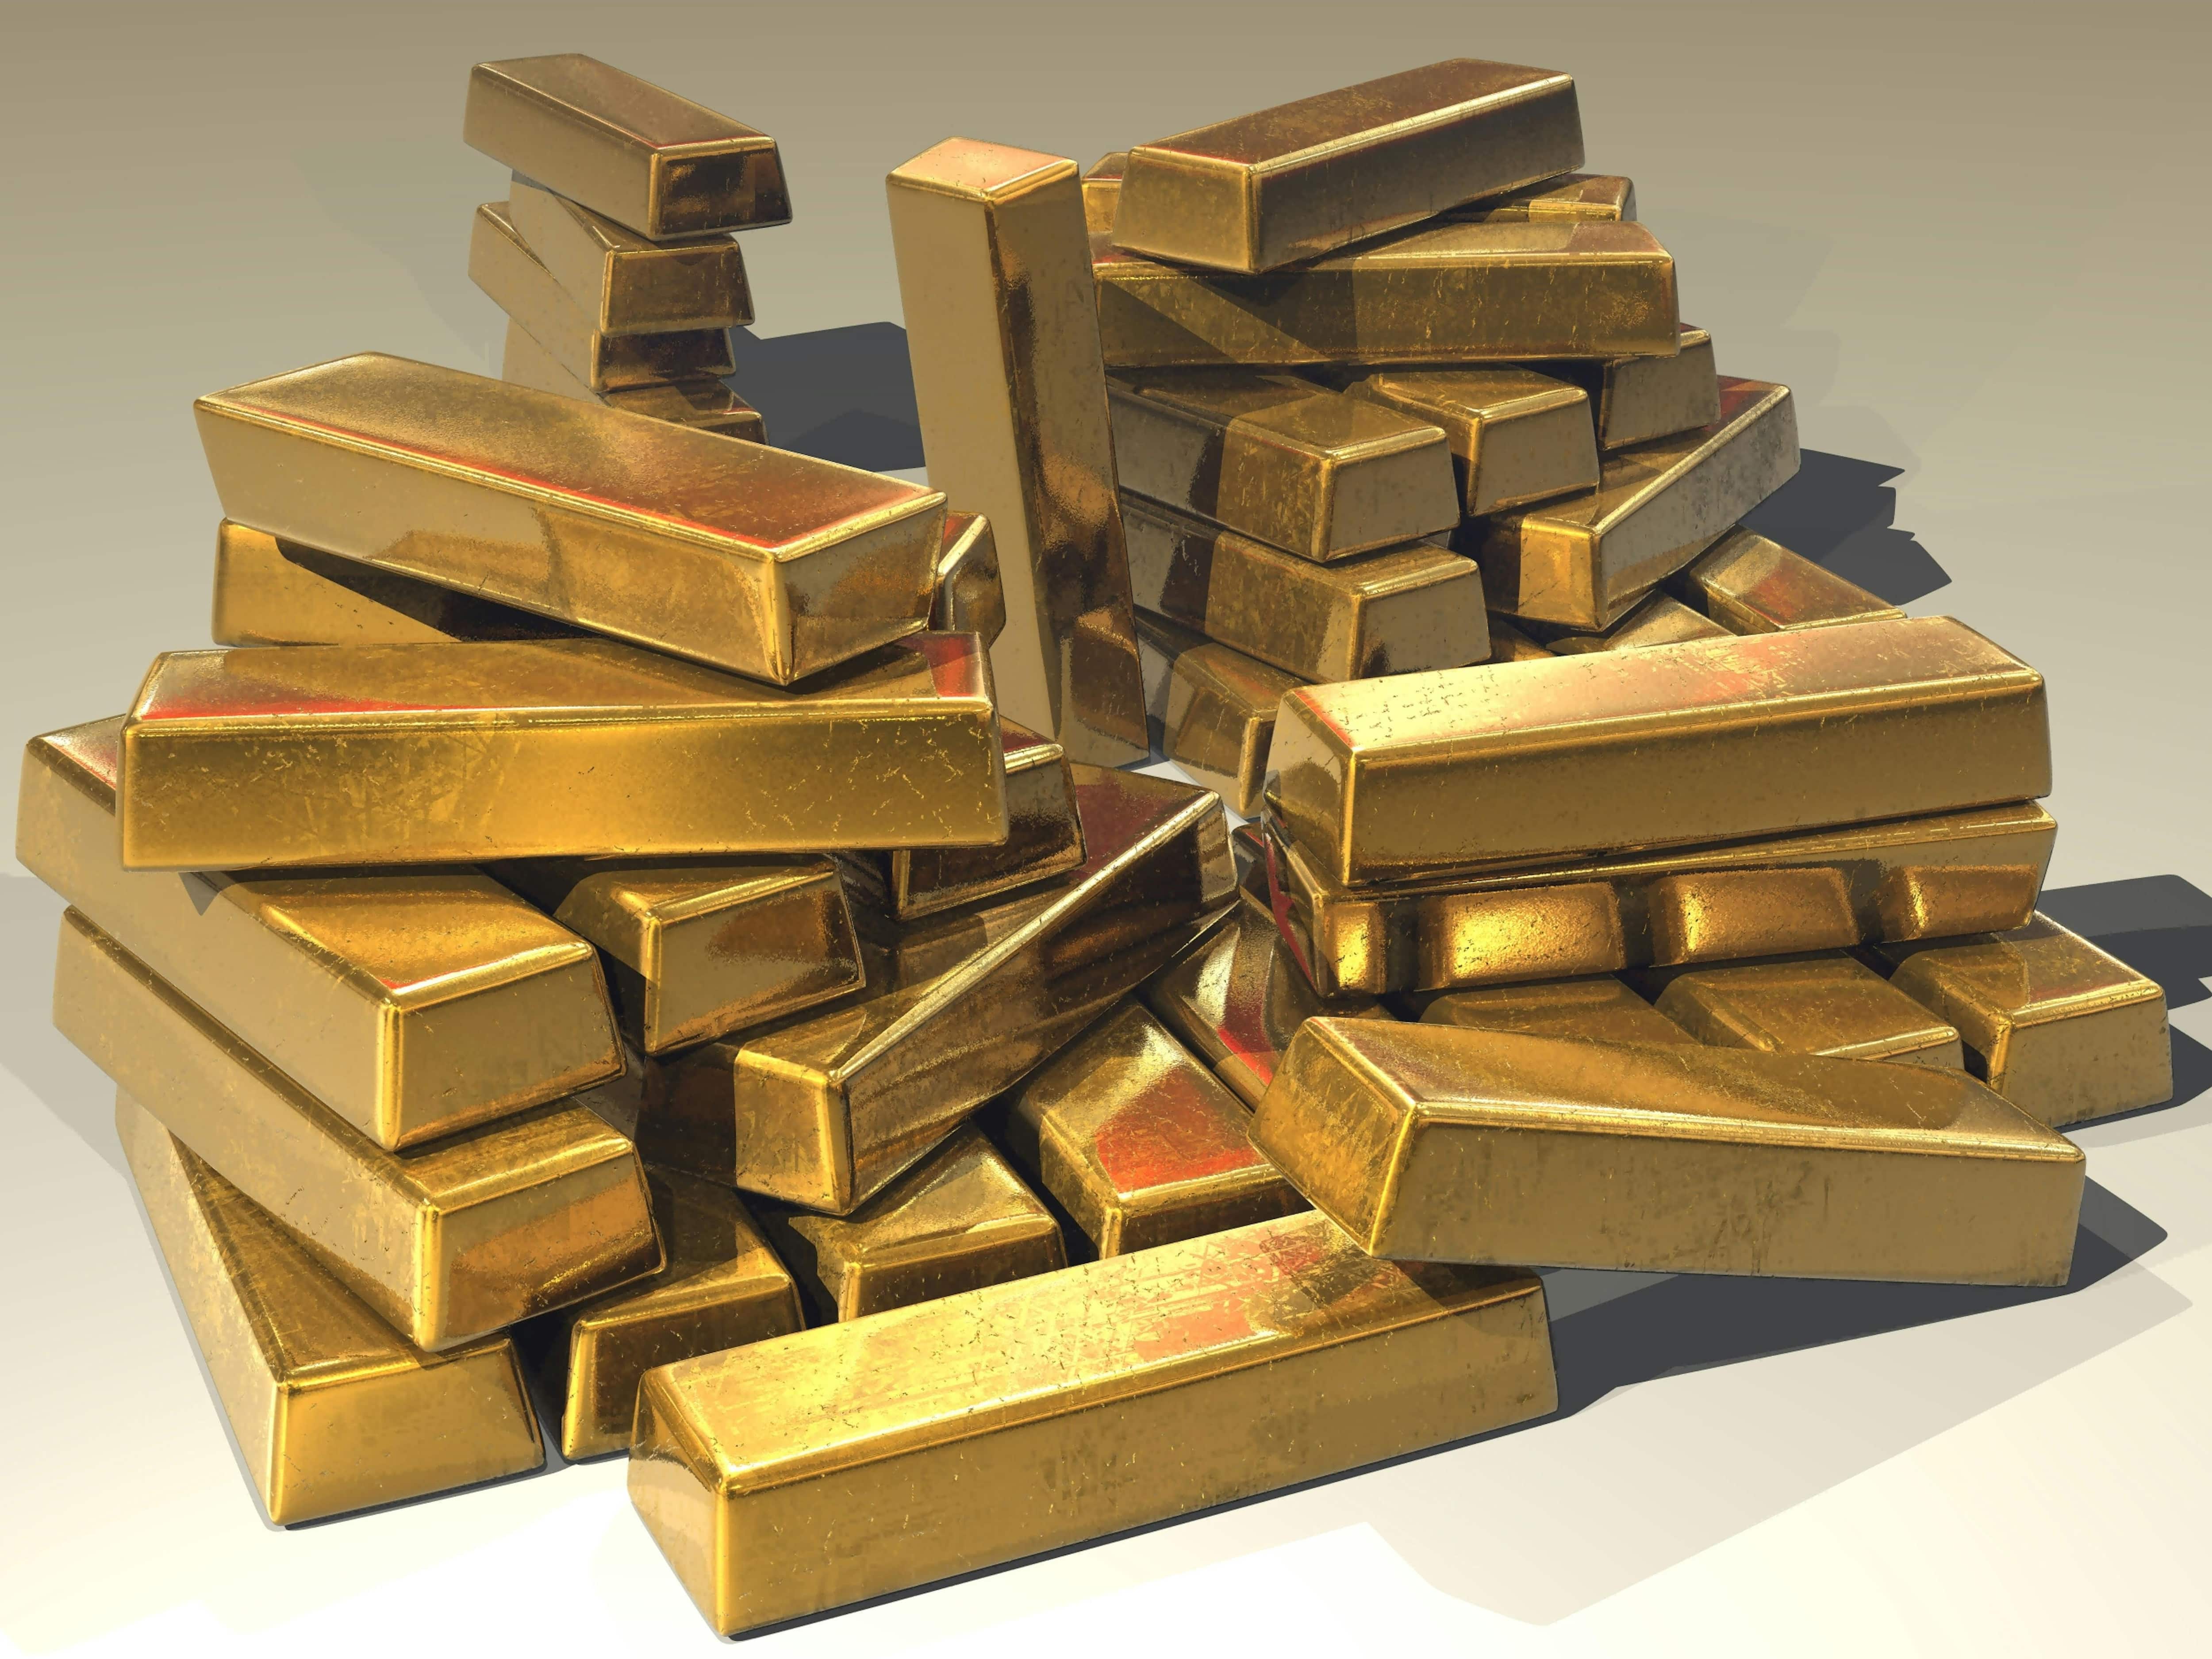 What makes gold precious?